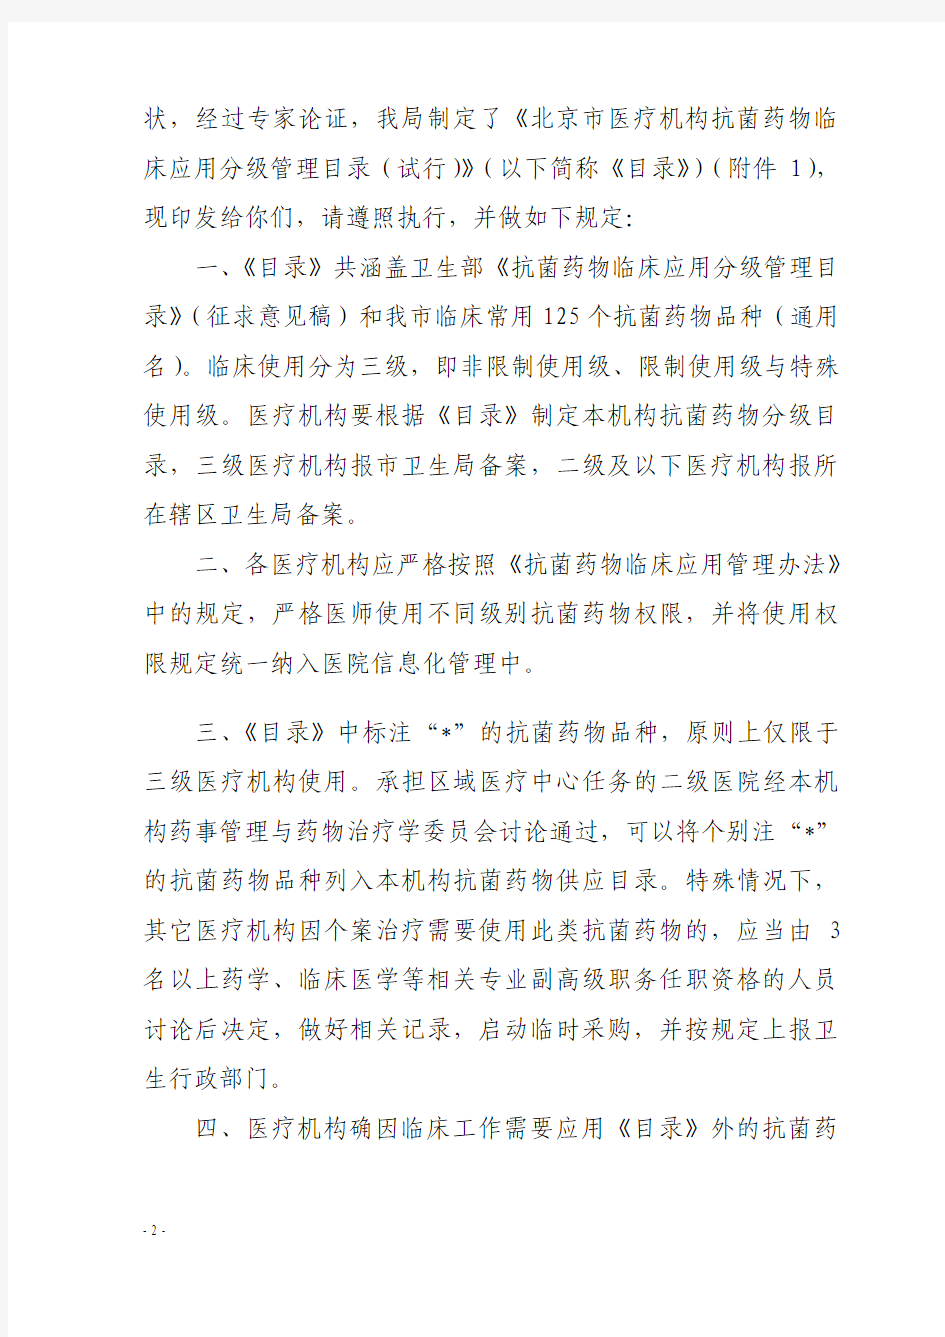 北京市卫生局关于印发《北京市医疗机构抗菌药物临床应用分级管理目录(试行)》的通知